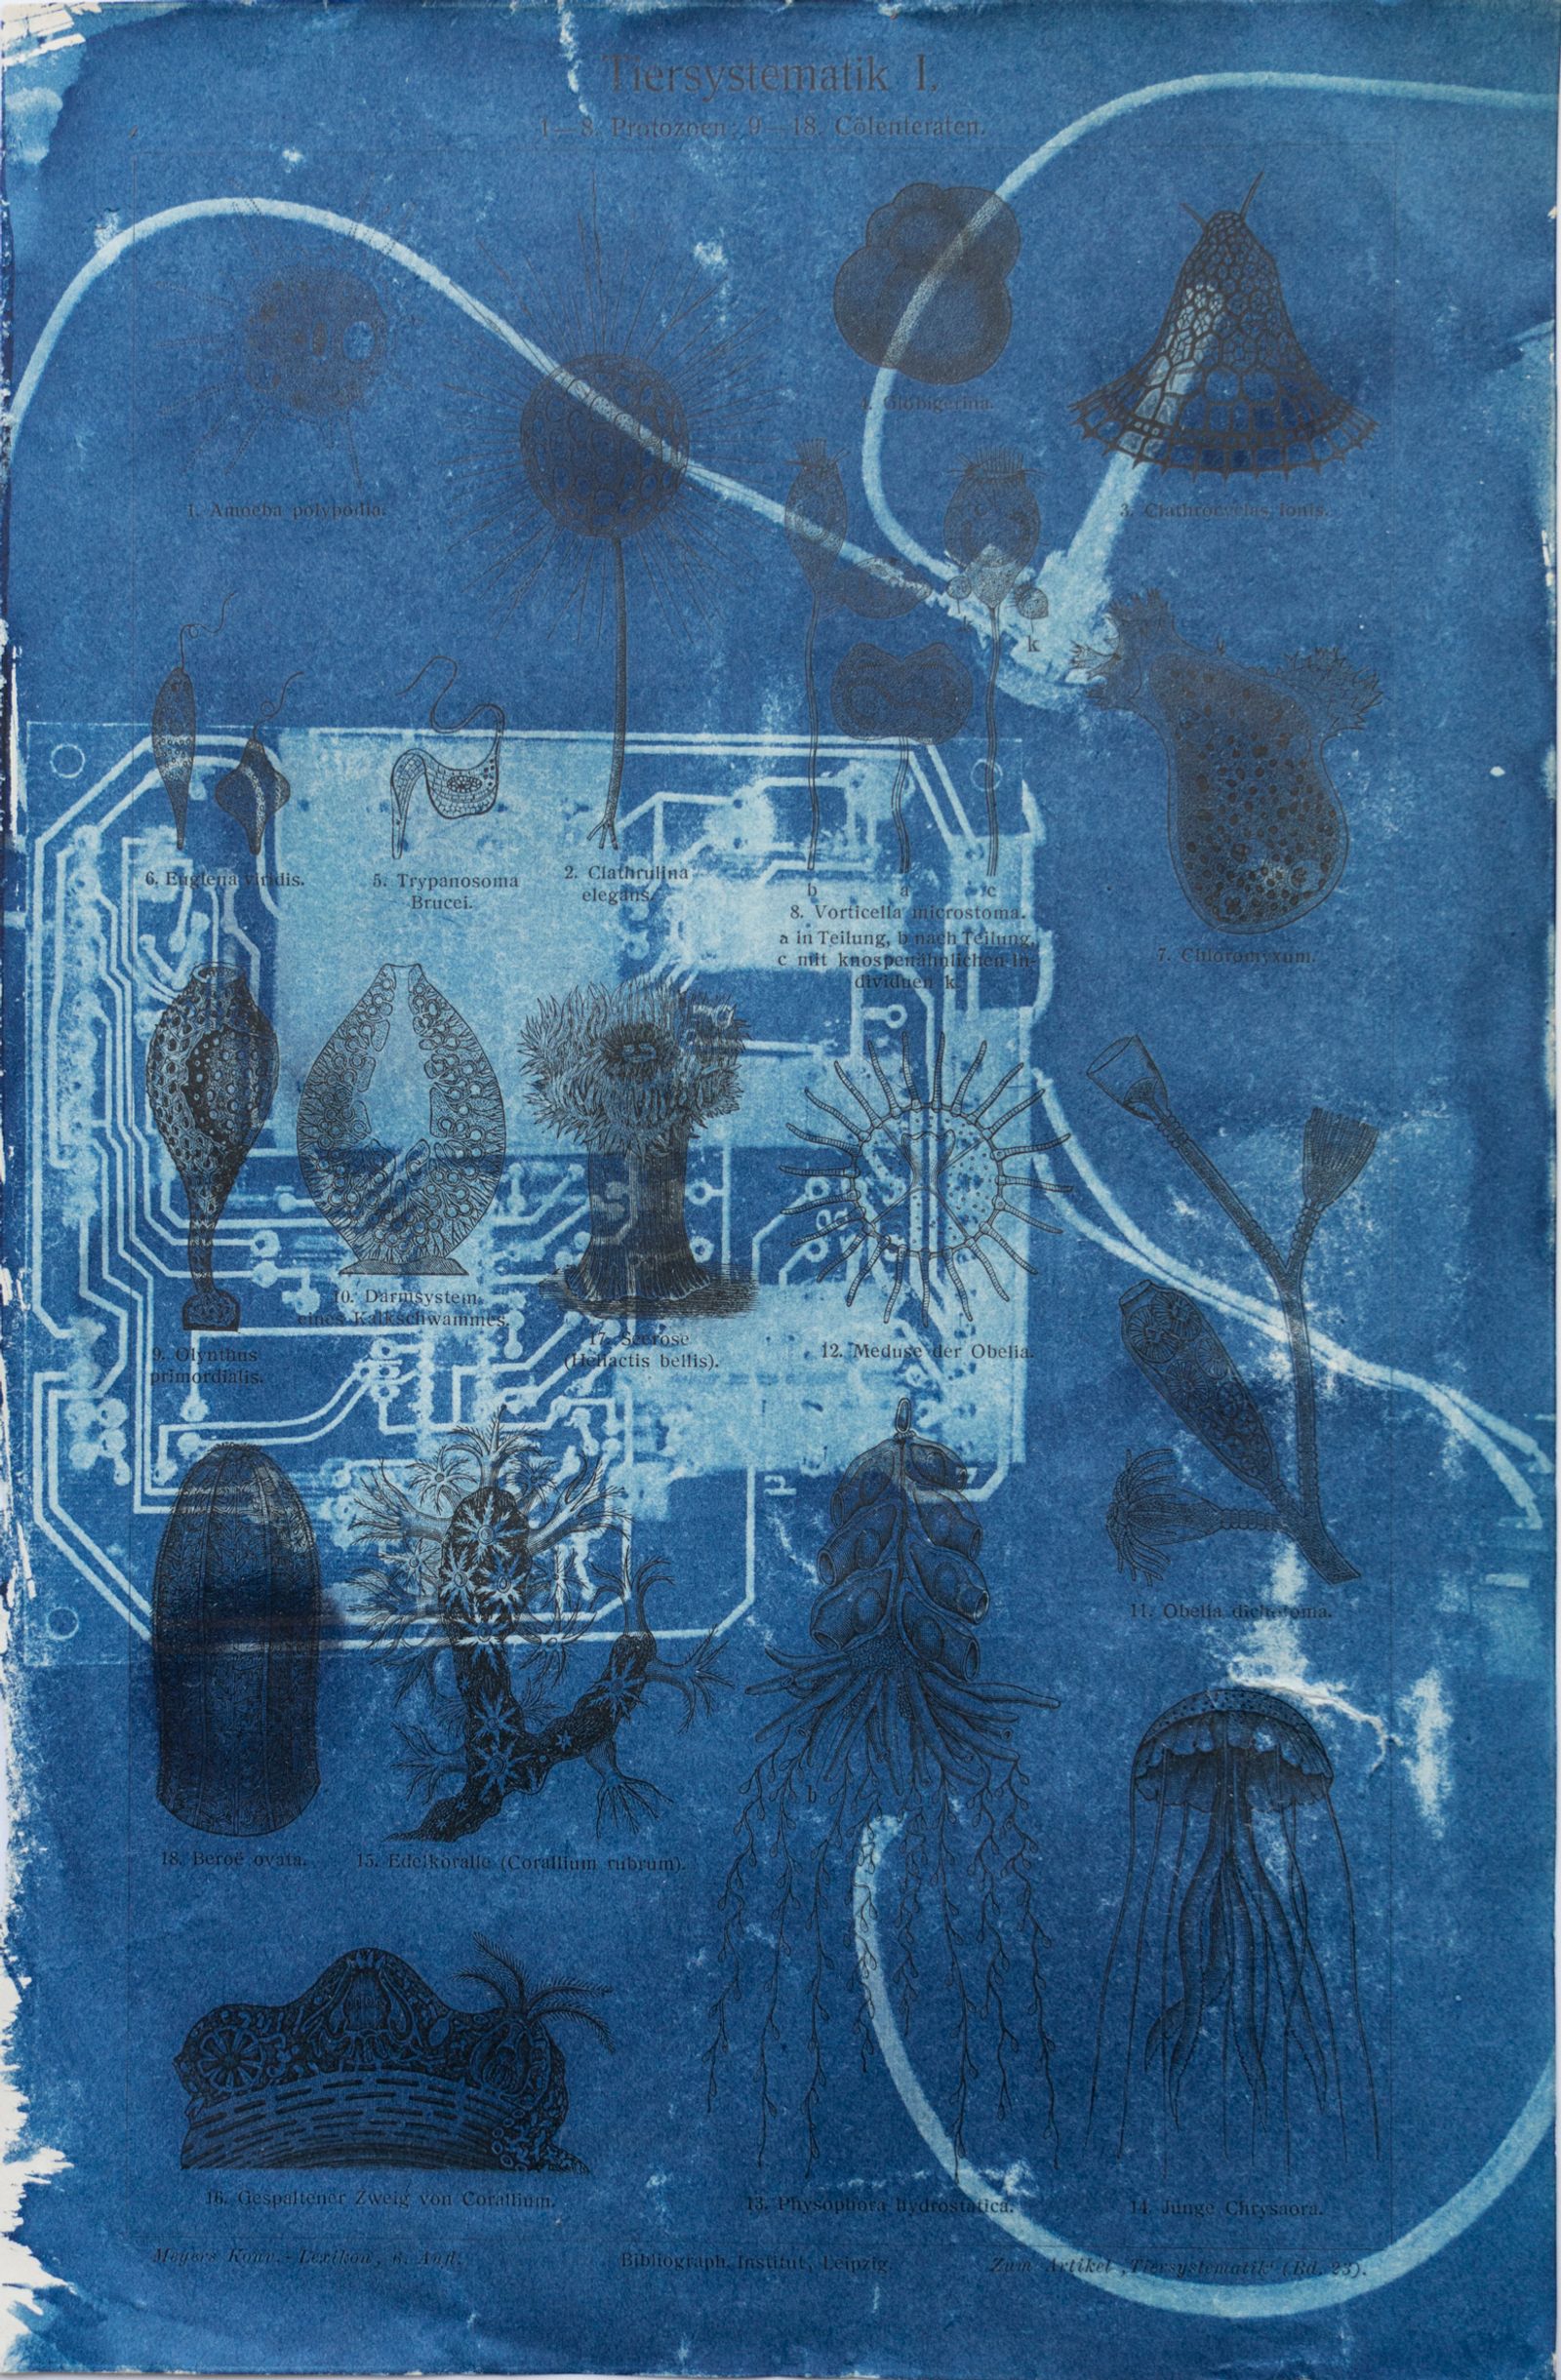 © Florence Iff - Amalgamated Fragmentation/ Technosphere- Board 3 cyanotype on vintage lithography